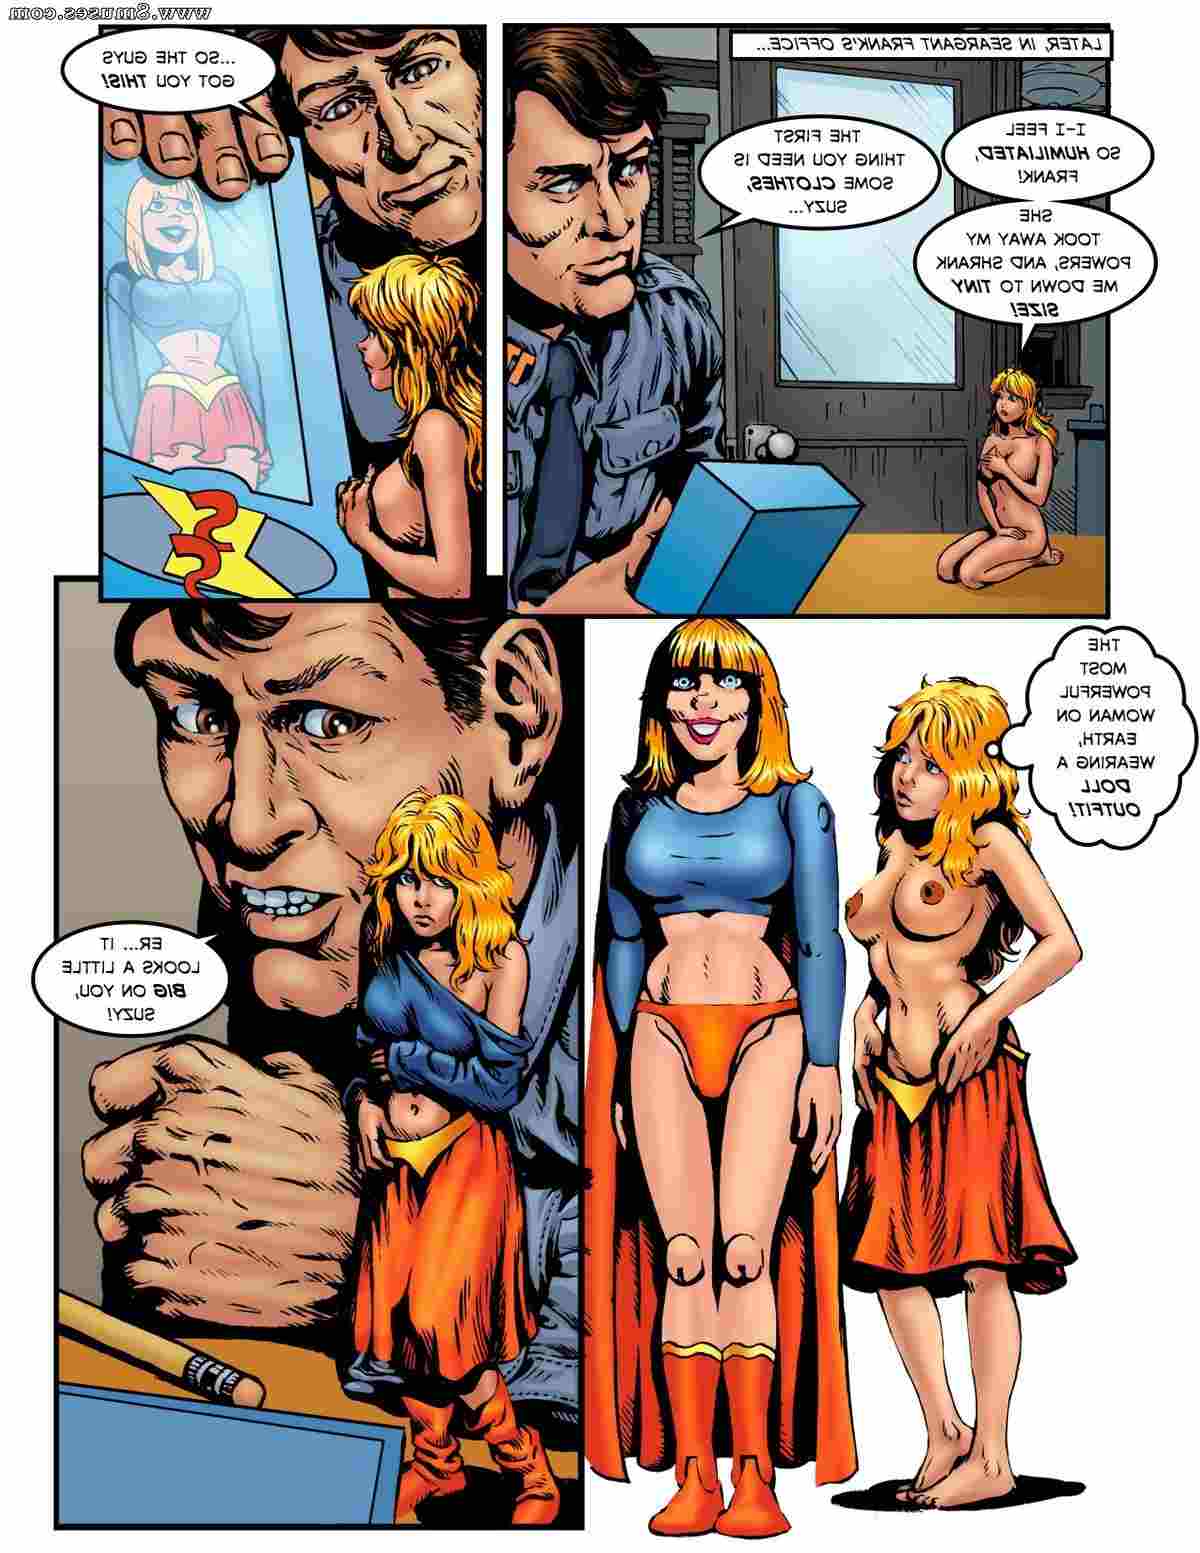 DreamTales-Comics/Super-Suzy-Vs-Mad-Marilyn Super_Suzy_Vs_Mad_Marilyn__8muses_-_Sex_and_Porn_Comics_17.jpg